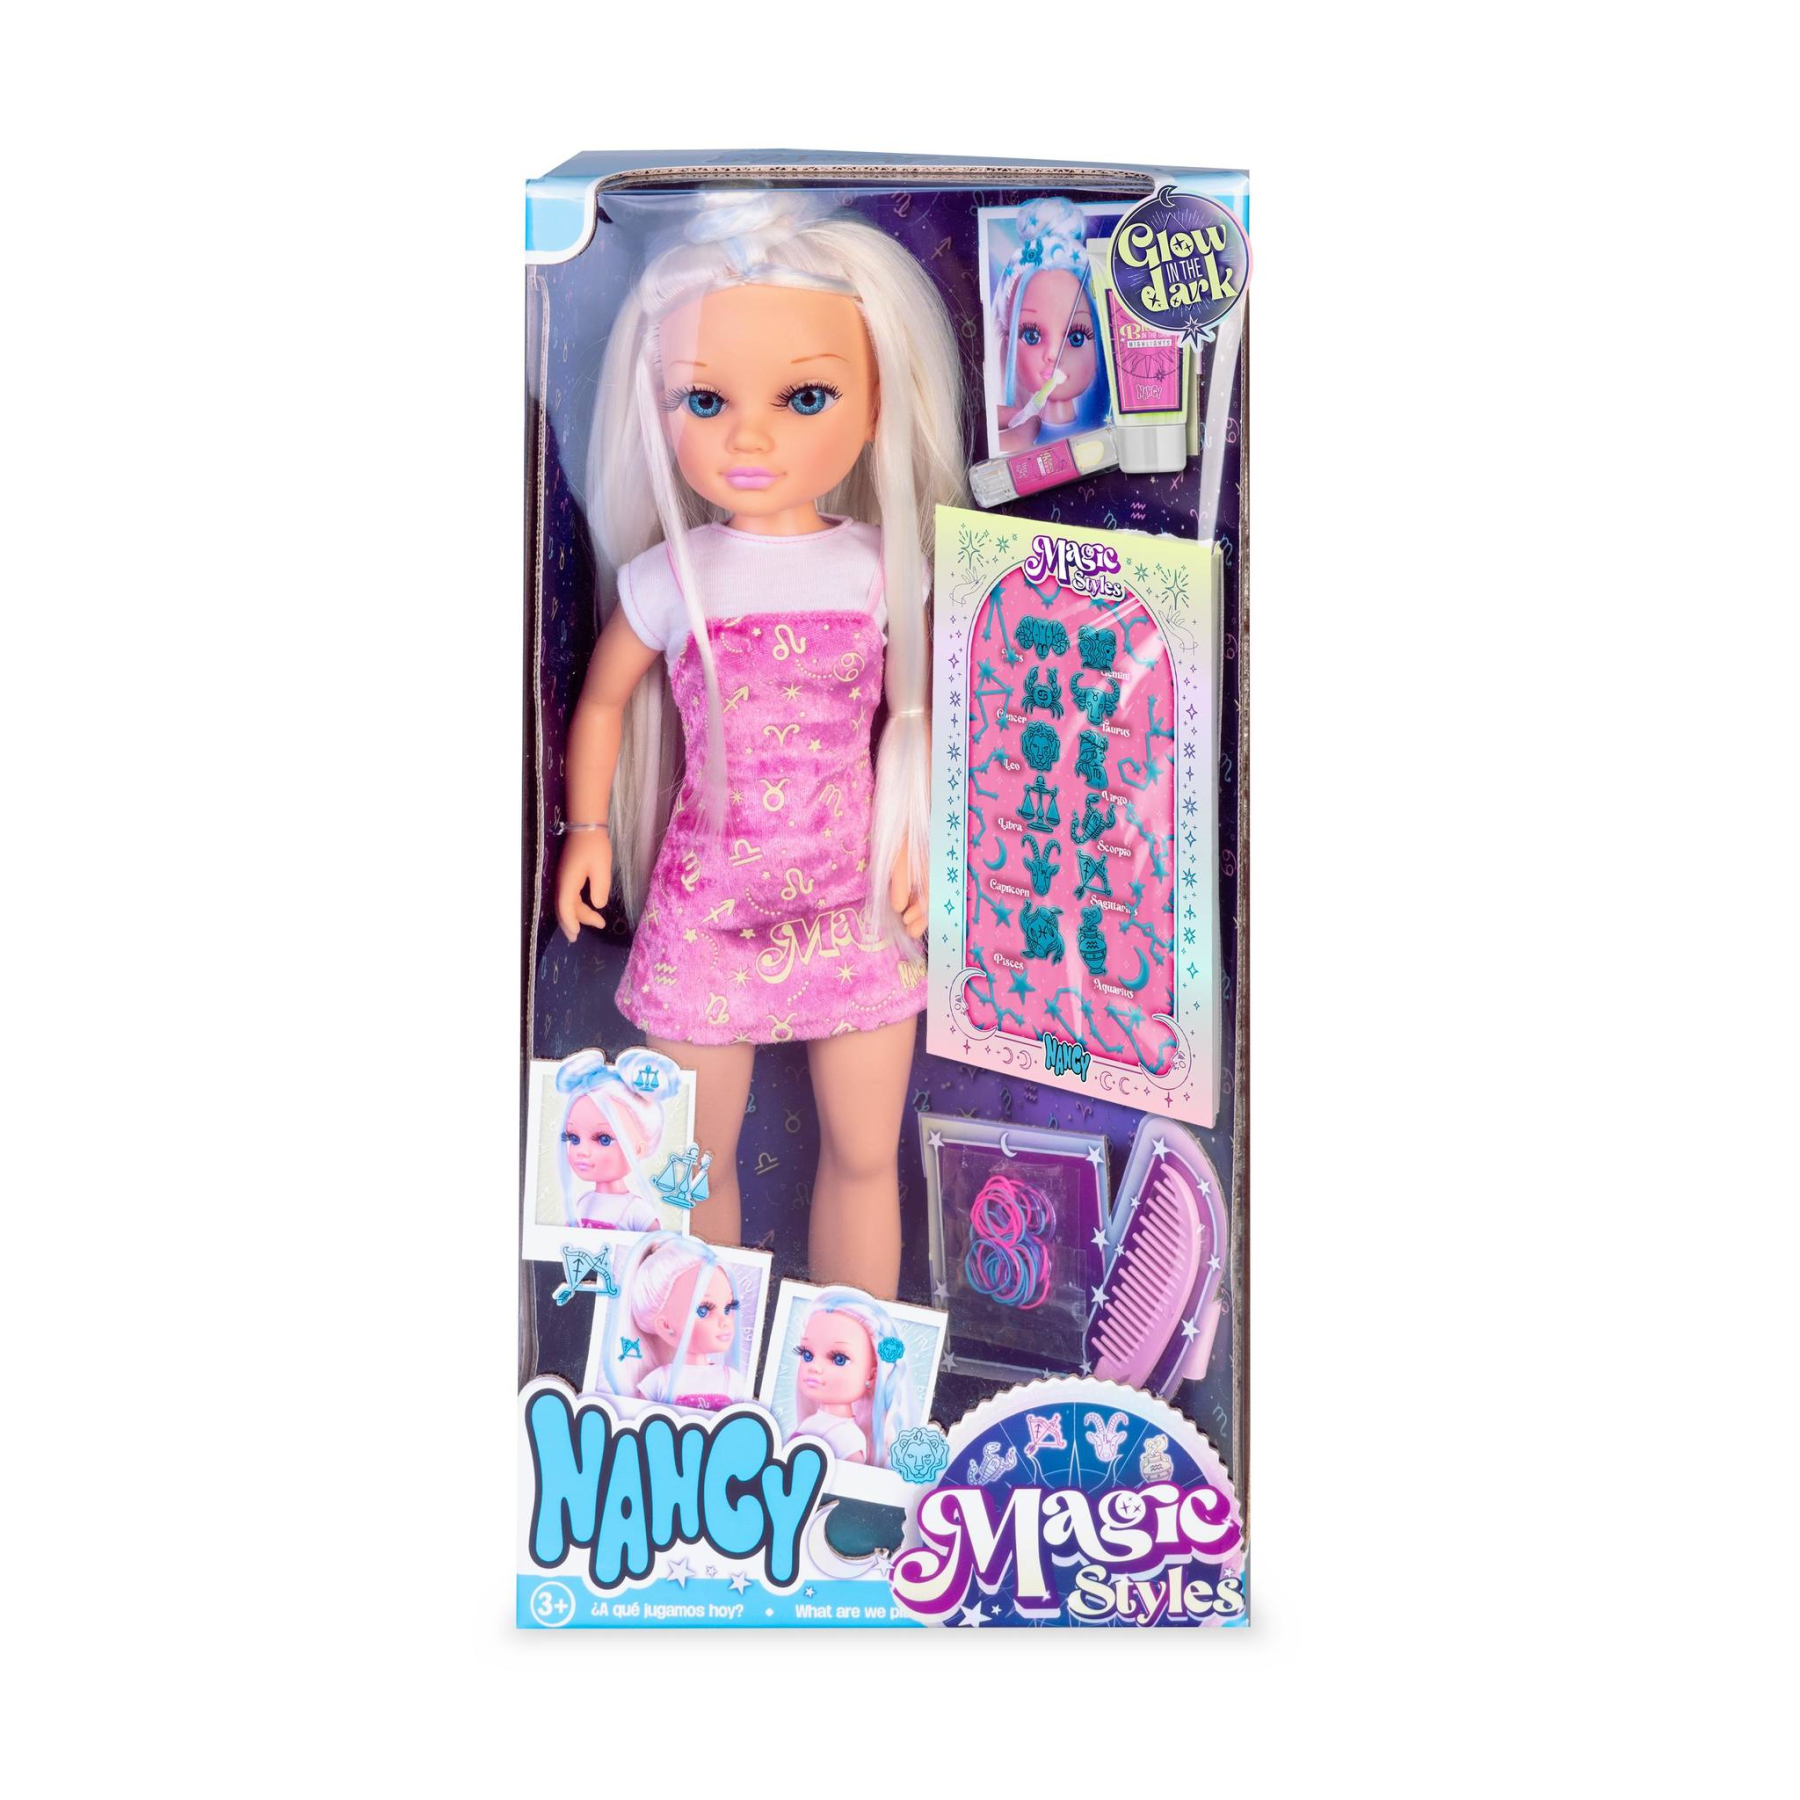 Nancy magic style, bambola nancy da 42 cm con accessori che brillano al buio. per bambine/i dai 3 anni. - NANCY